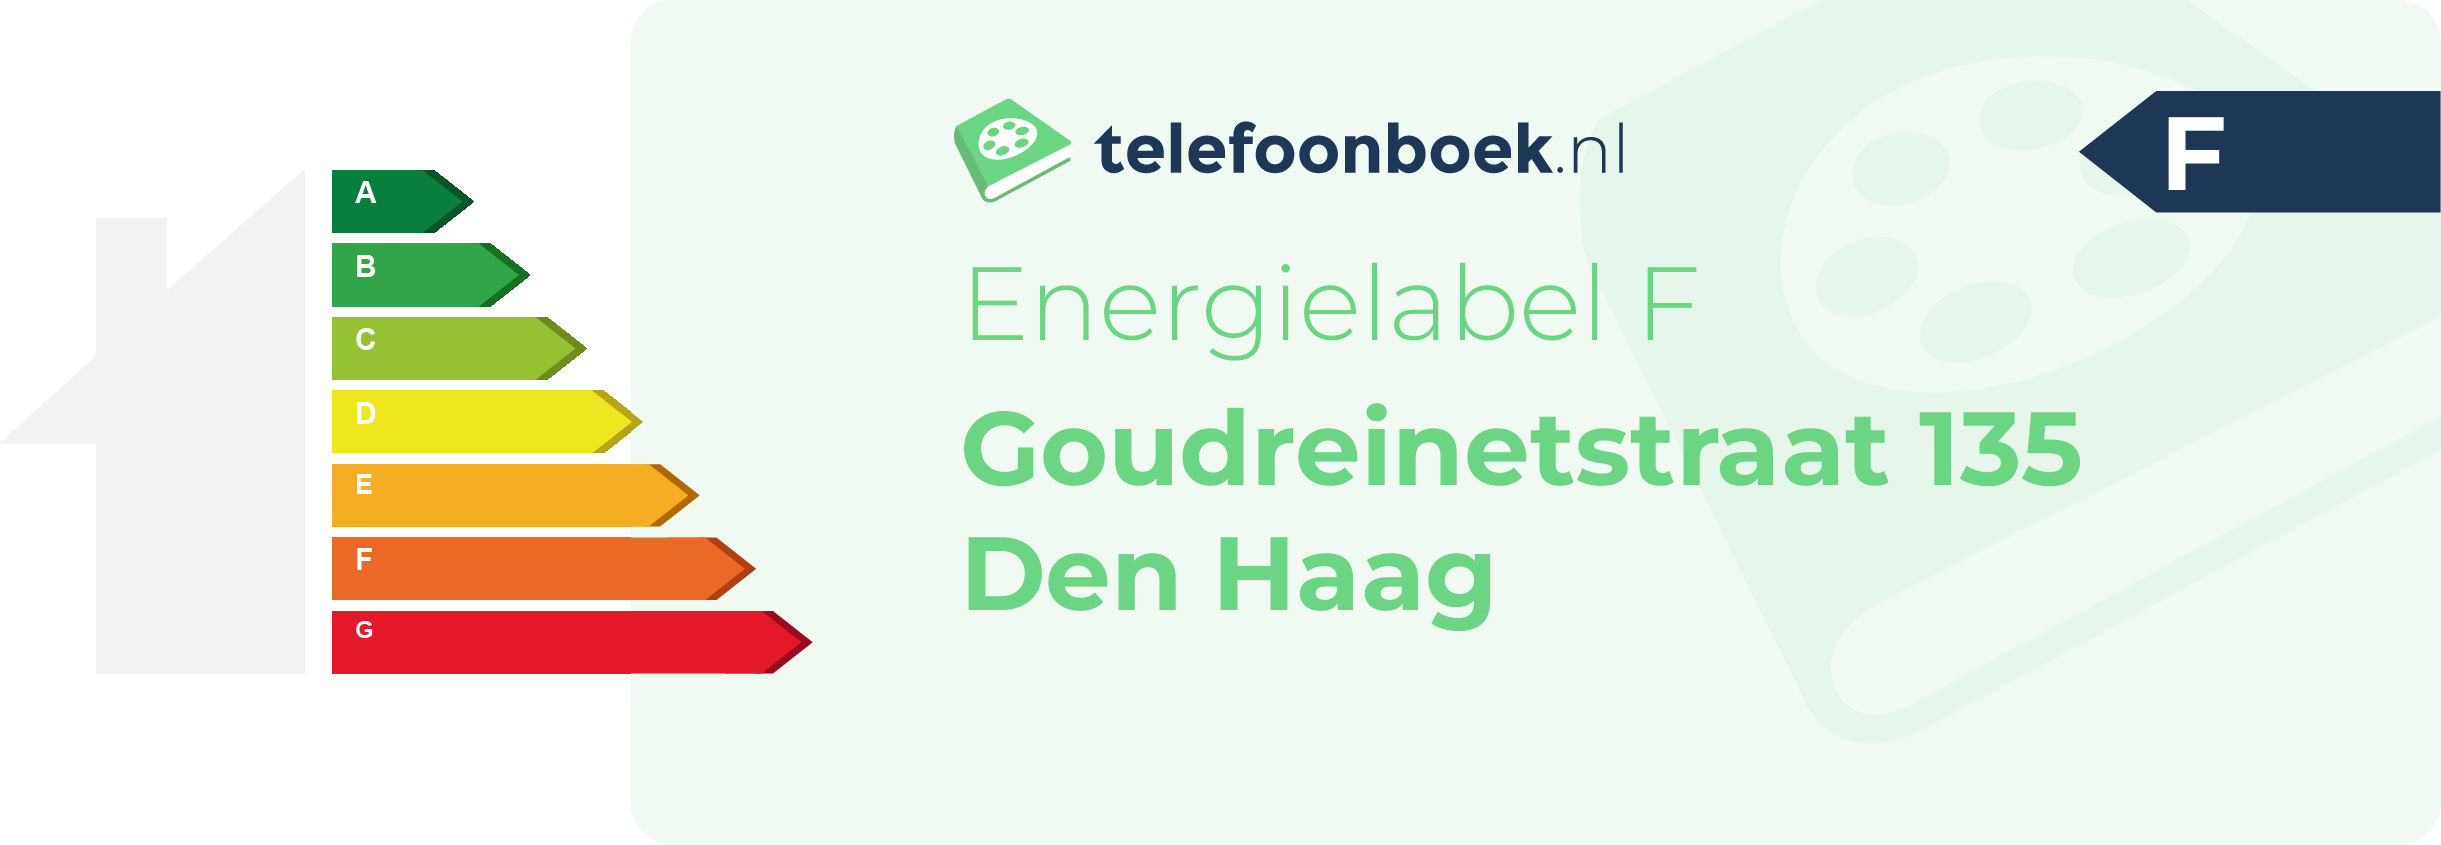 Energielabel Goudreinetstraat 135 Den Haag